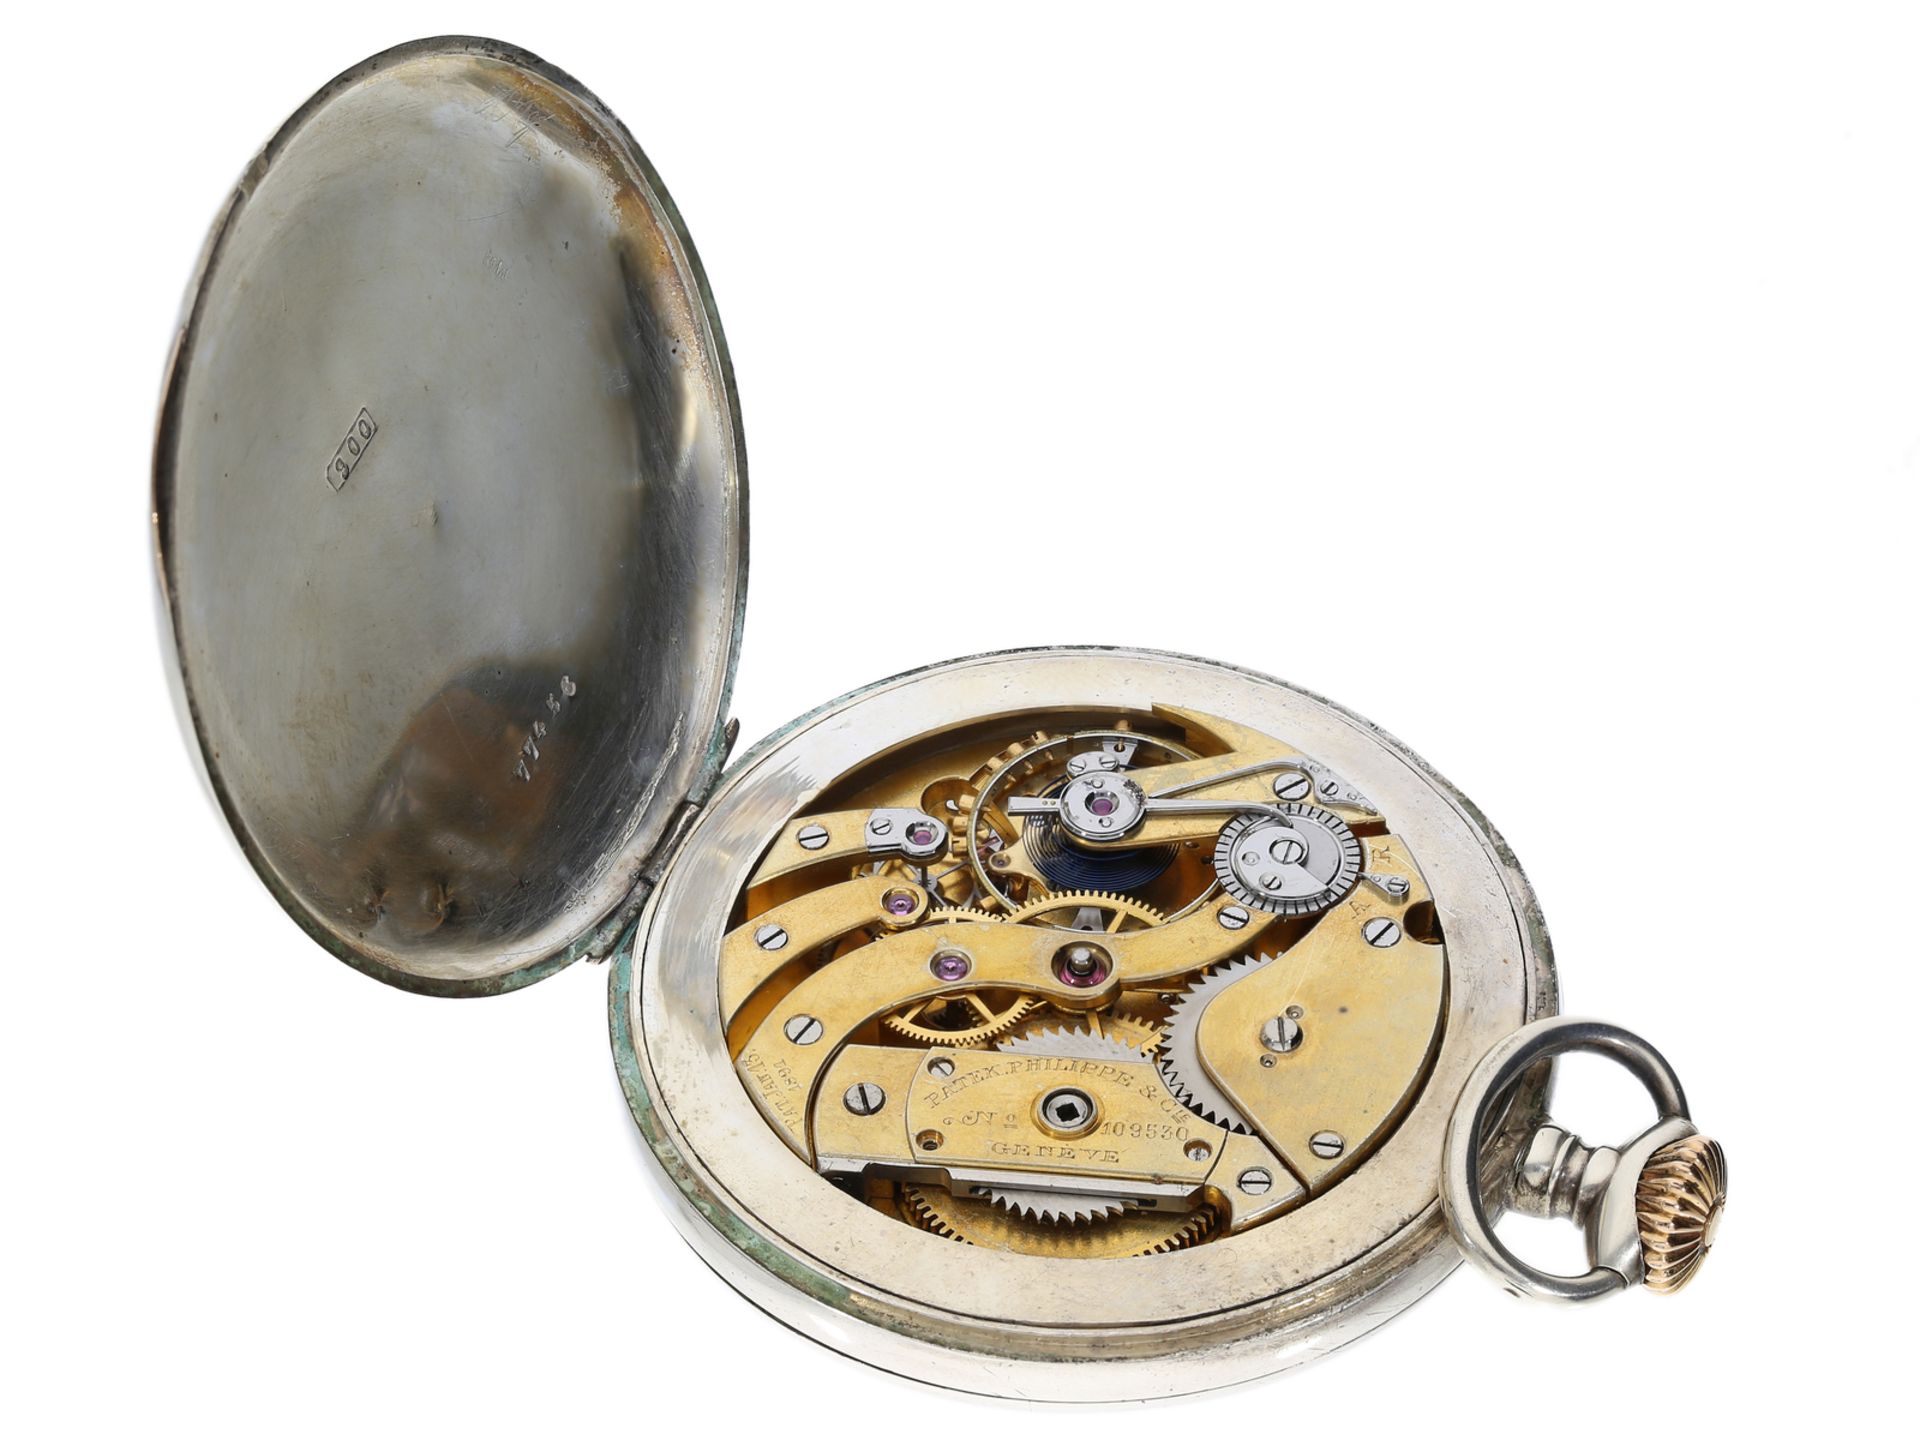 Taschenuhr: ungewöhnliche, große Taschenuhr mit Patek Philippe Ankerchronometerwerk, ca. 1895 - Bild 4 aus 4